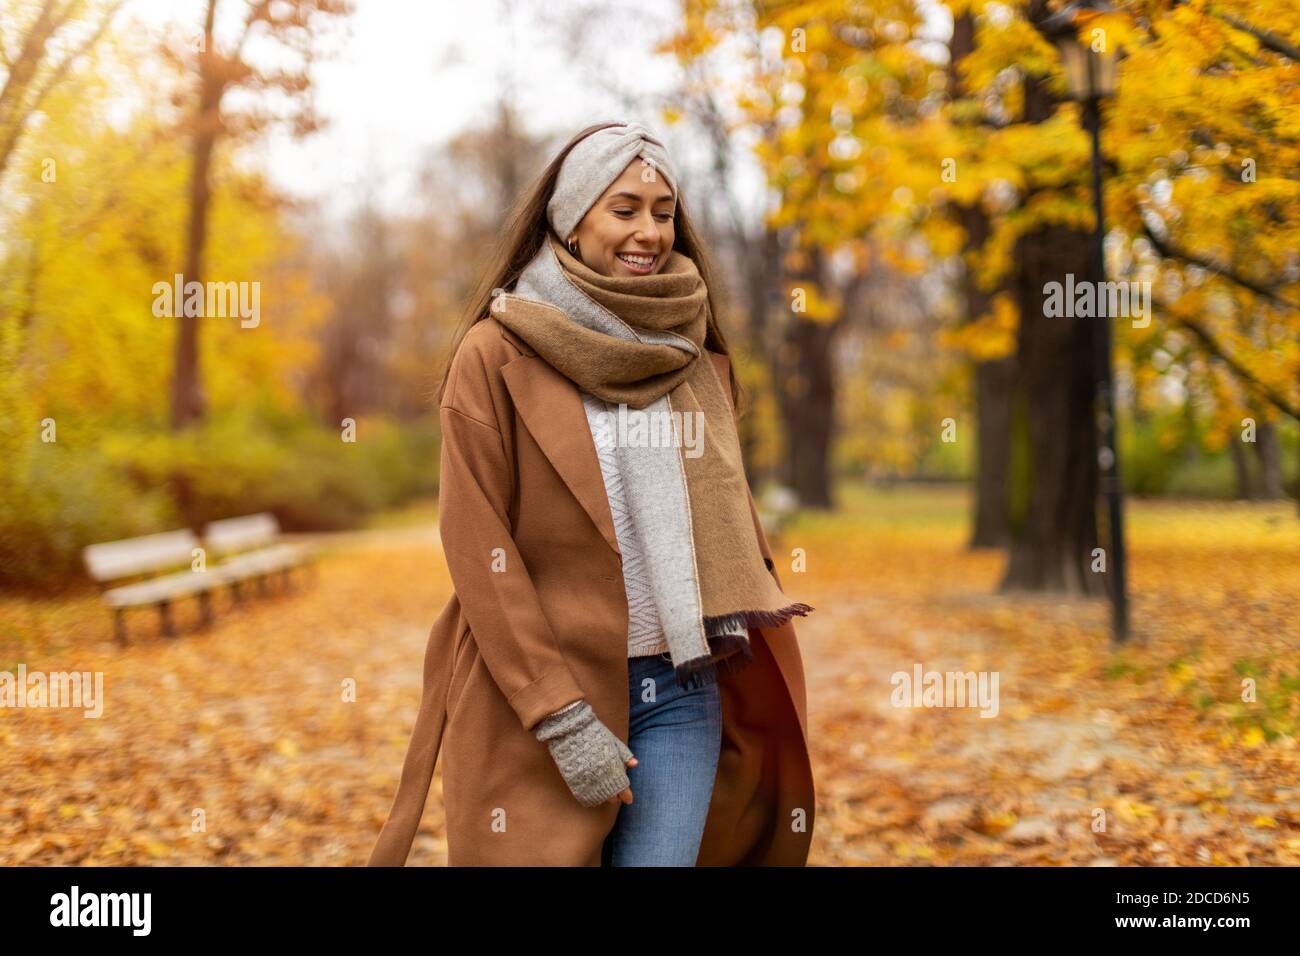 Retrato de mujer sonriente en un parque en otoño Foto de stock